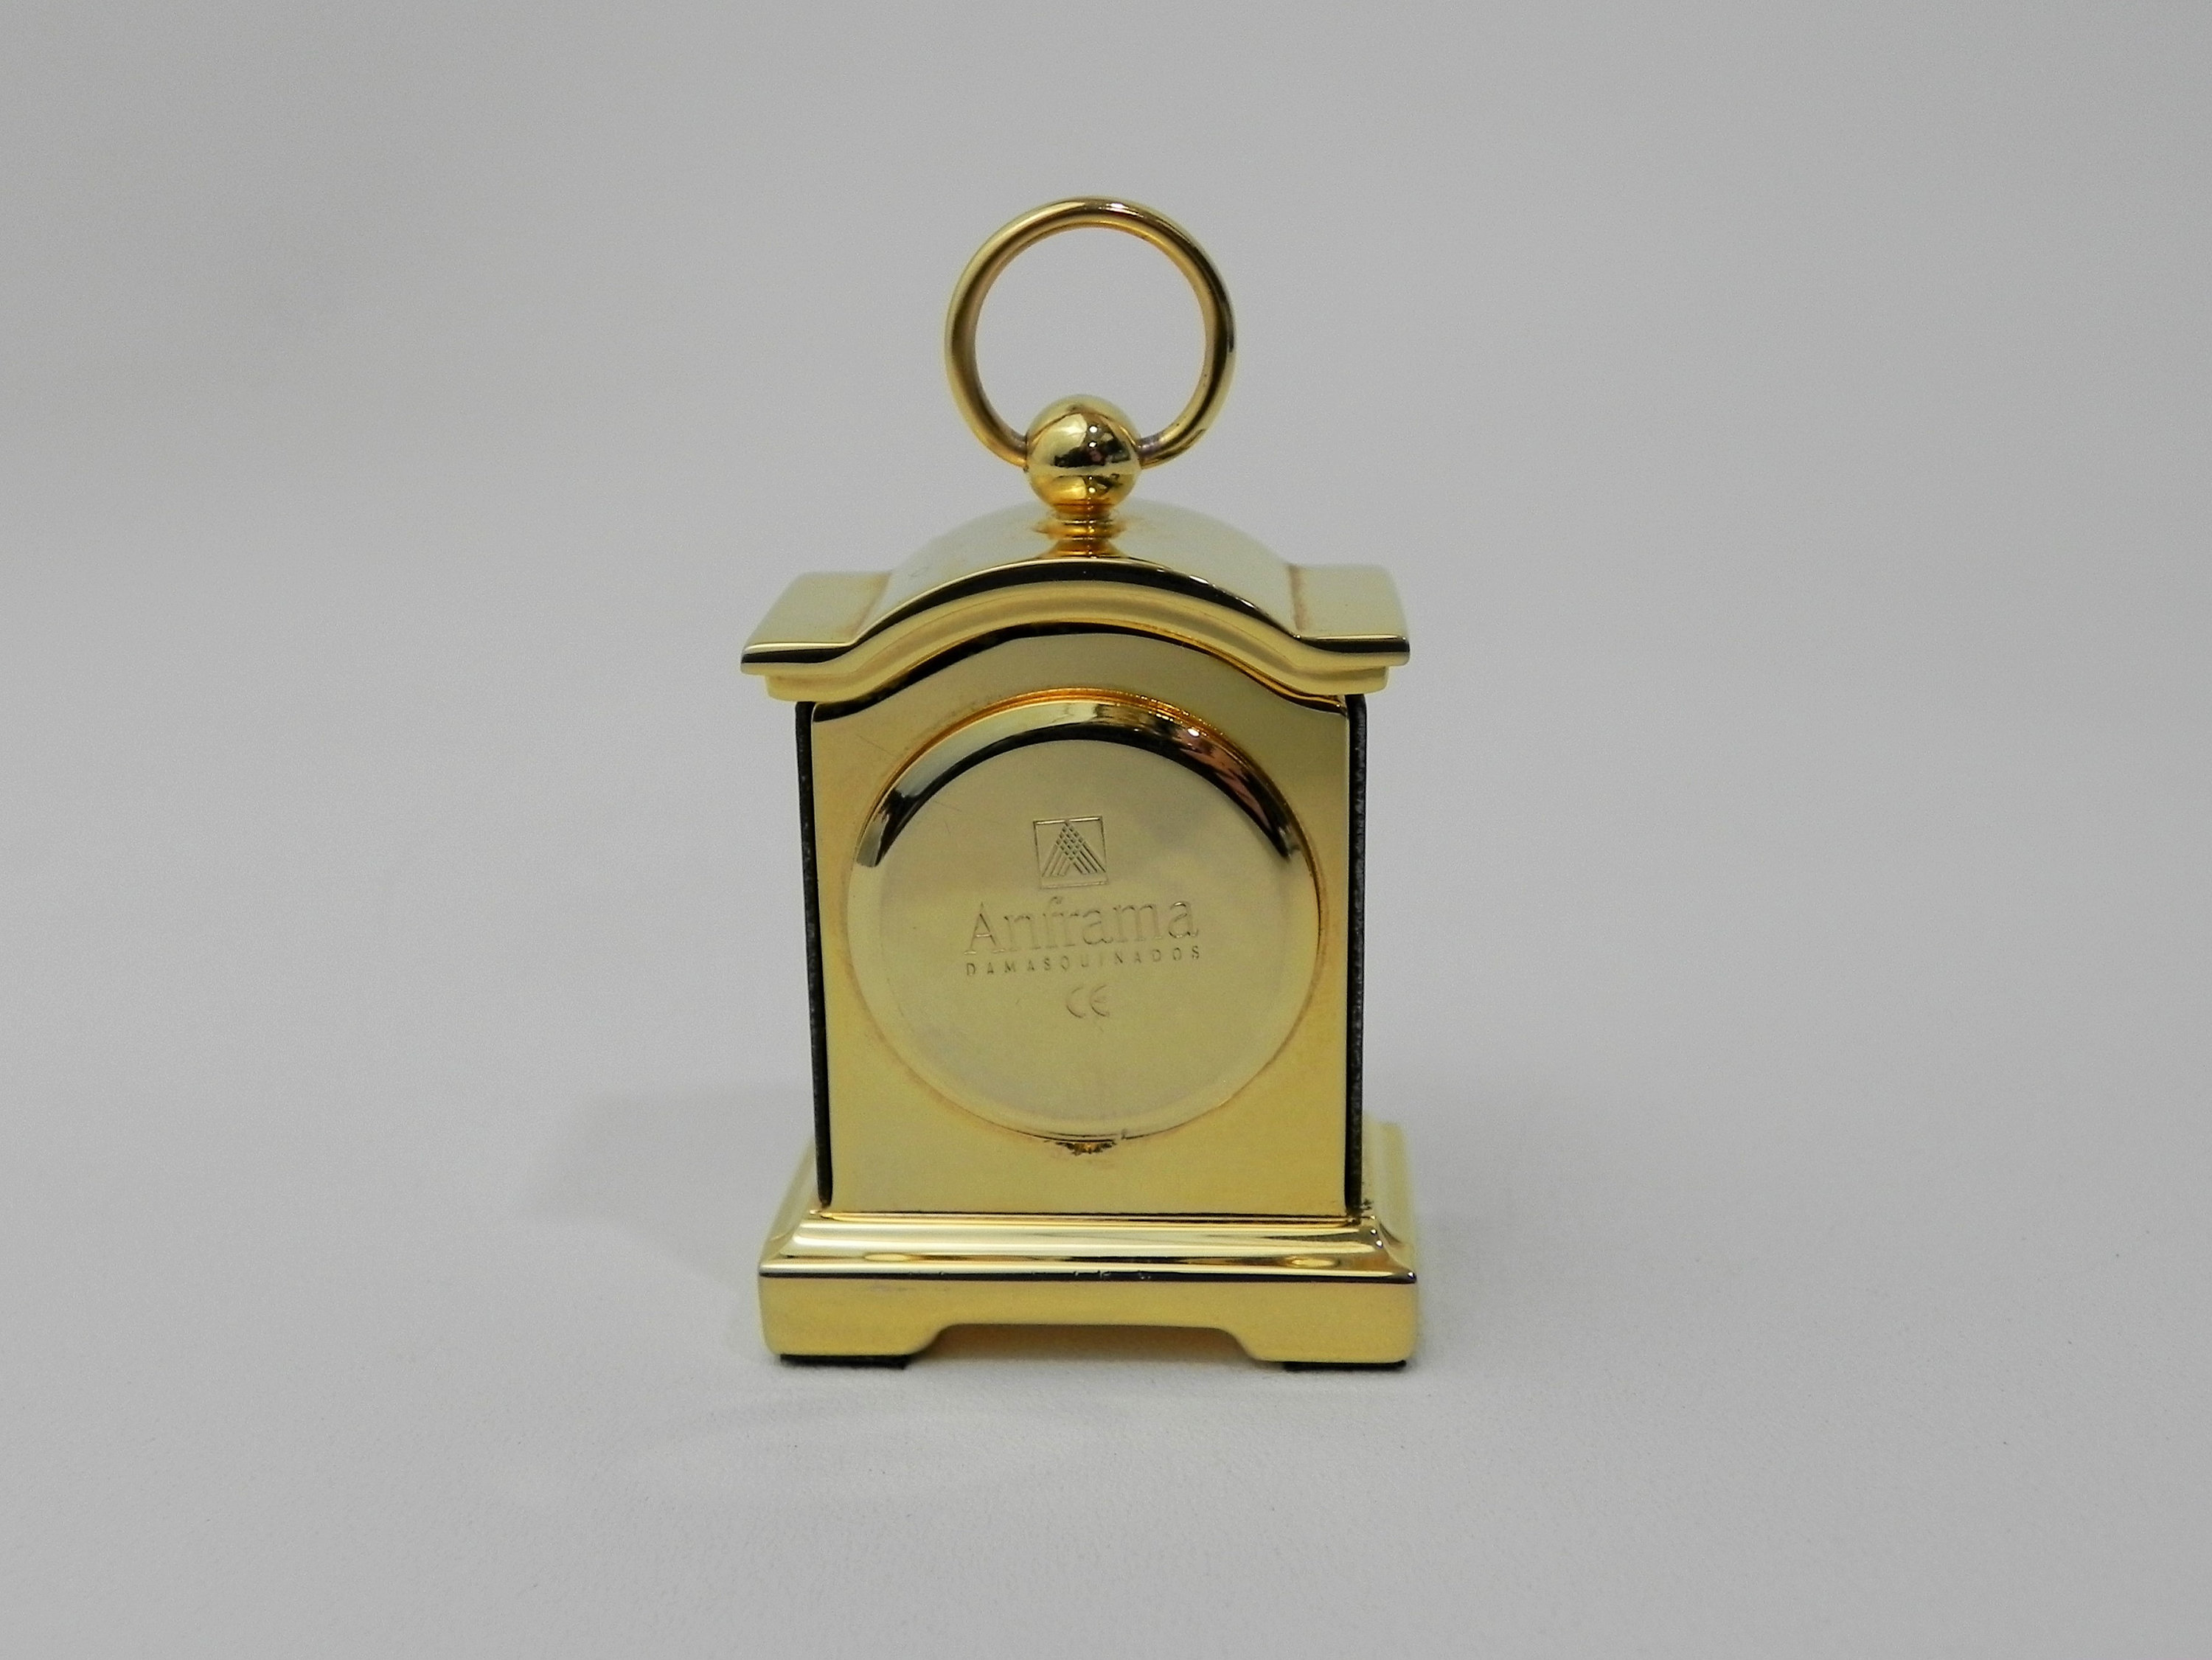 Damascene Miniature Clock Anframa Damasquinados | Etsy